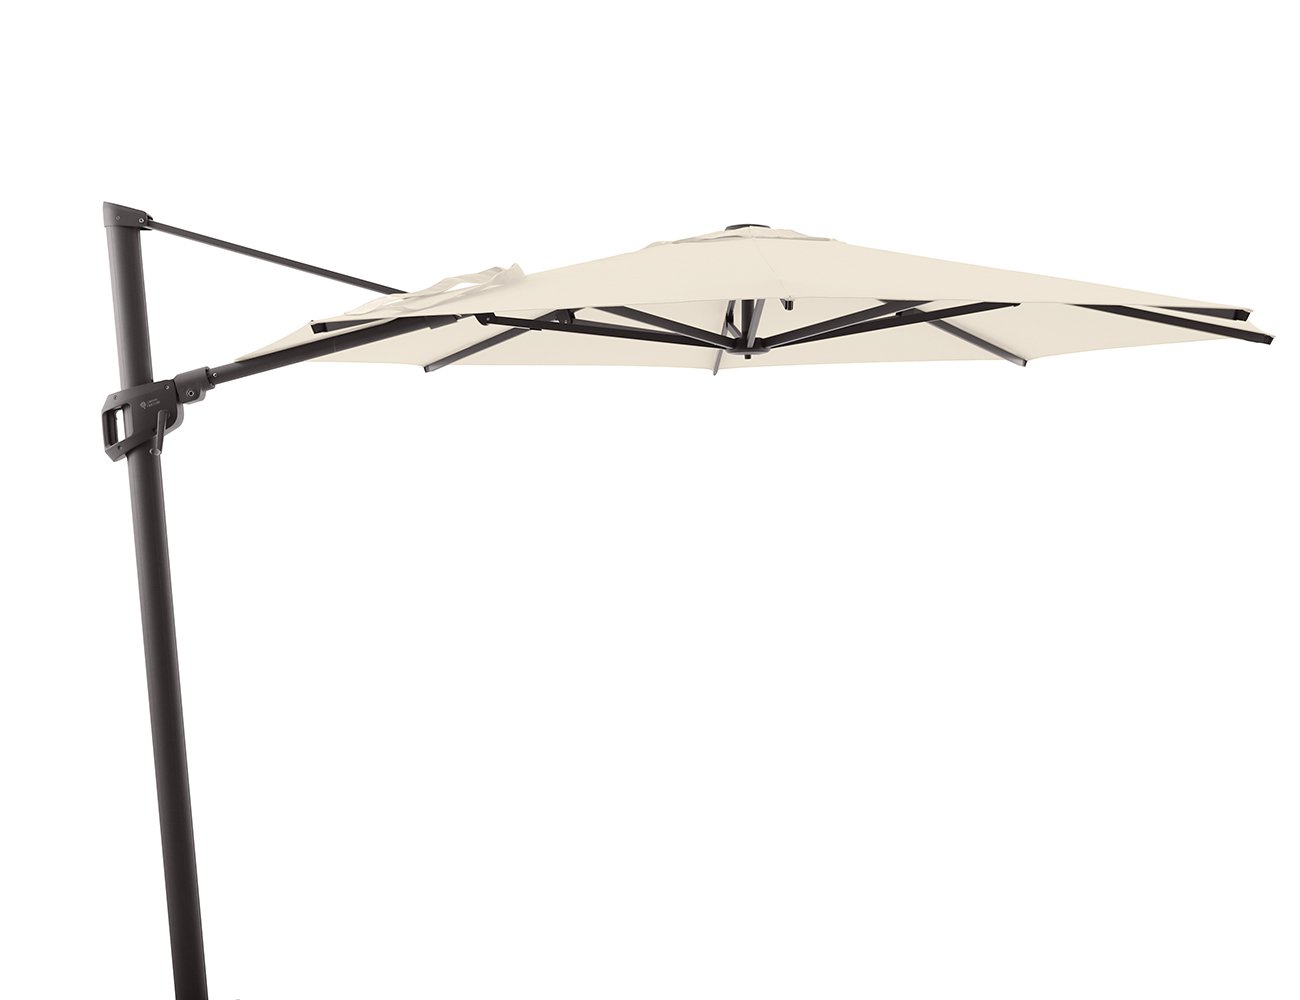 3m Cantilever Umbrella - Beige